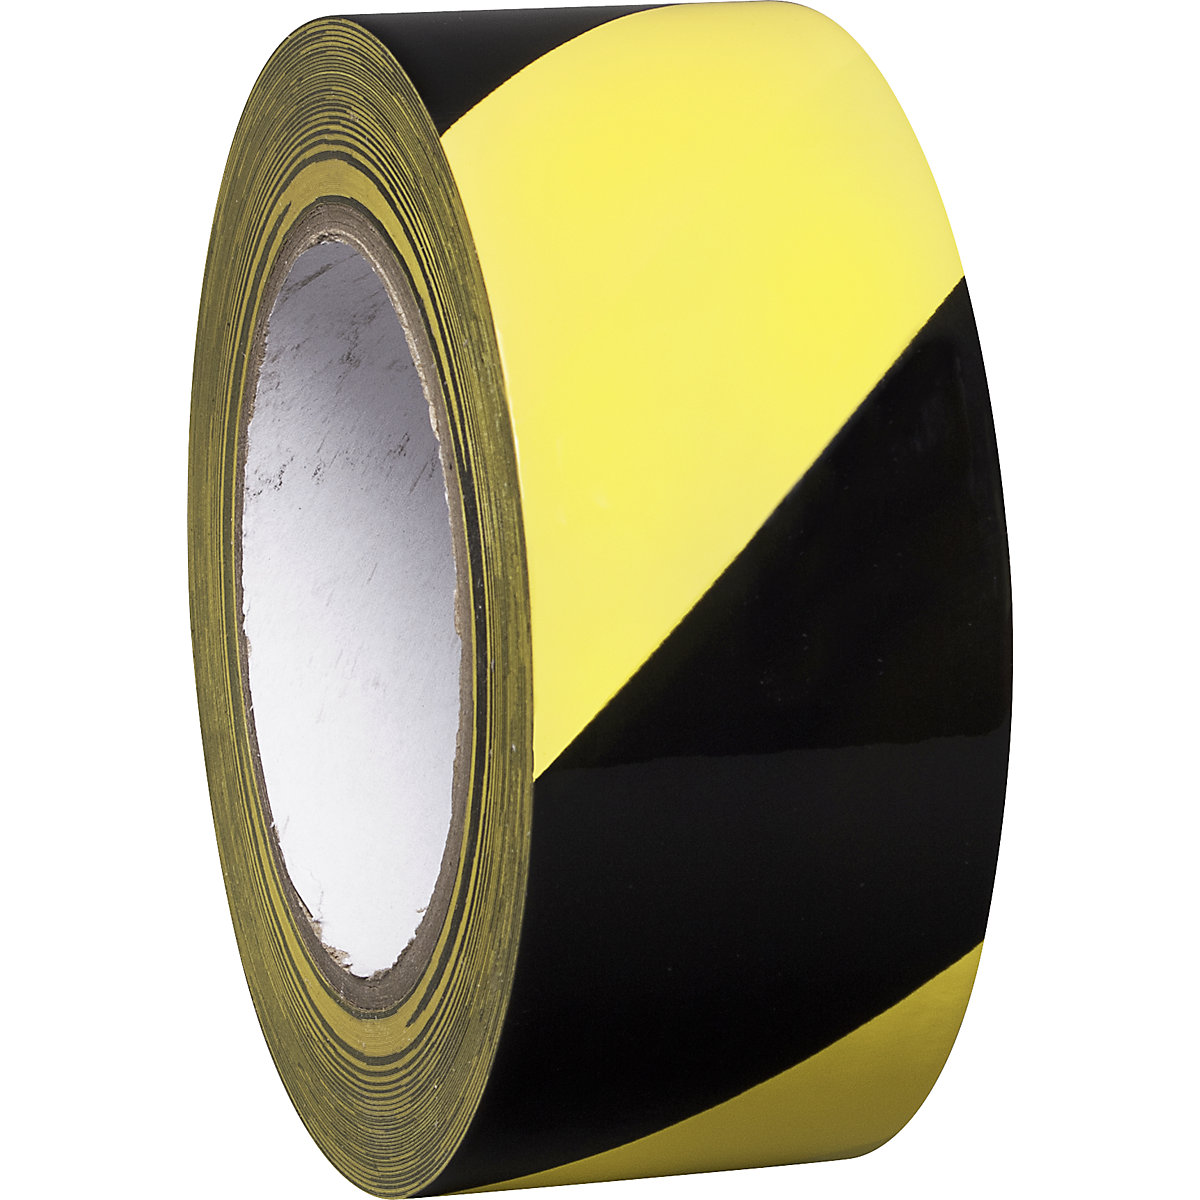 Podlahový značkovací pás z vinylu, dvoubarevný, šířka 50 mm, žlutá / černá, bal.j. 8 rolí-4